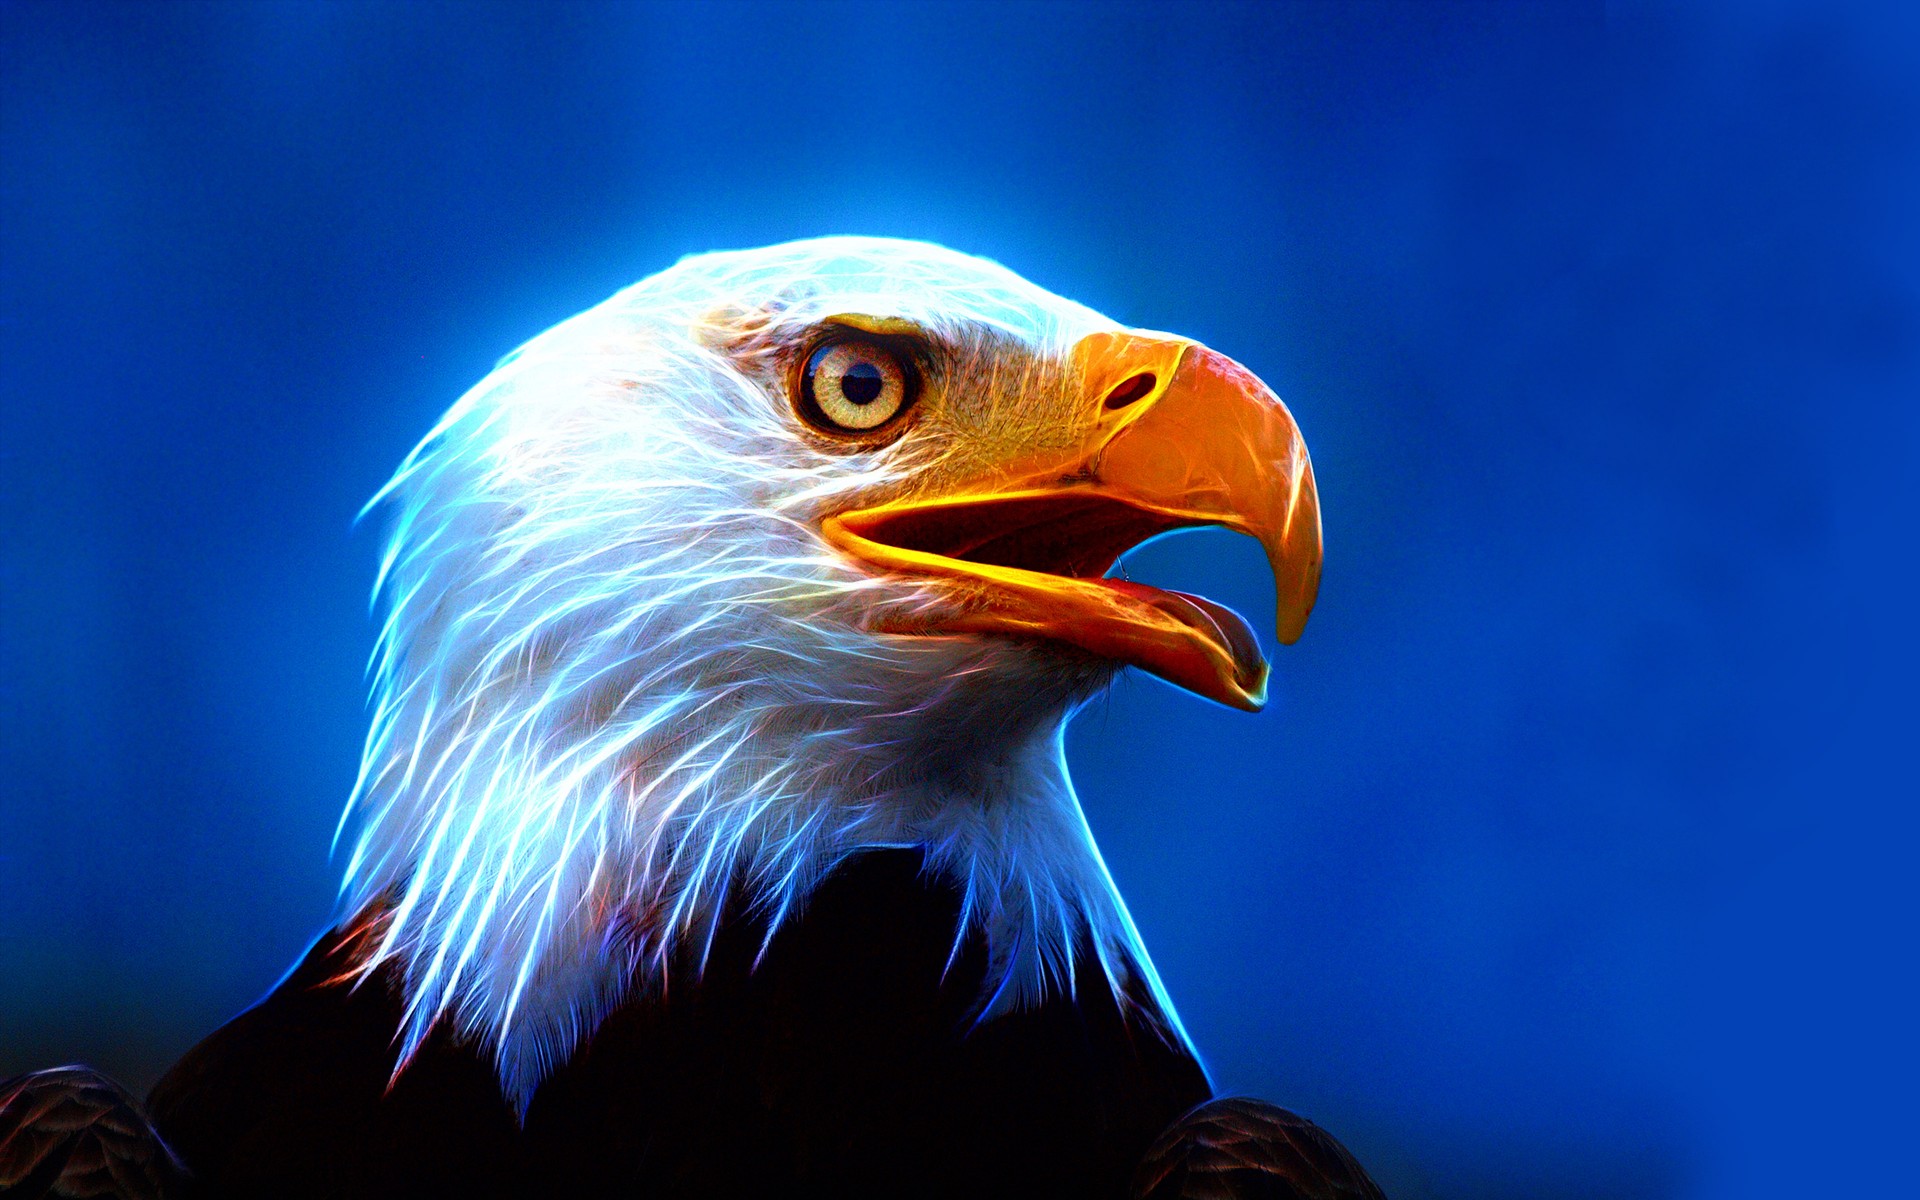 Descarga gratuita de fondo de pantalla para móvil de Animales, Águila, Águila Calva, Aves, Ave, Cgi.